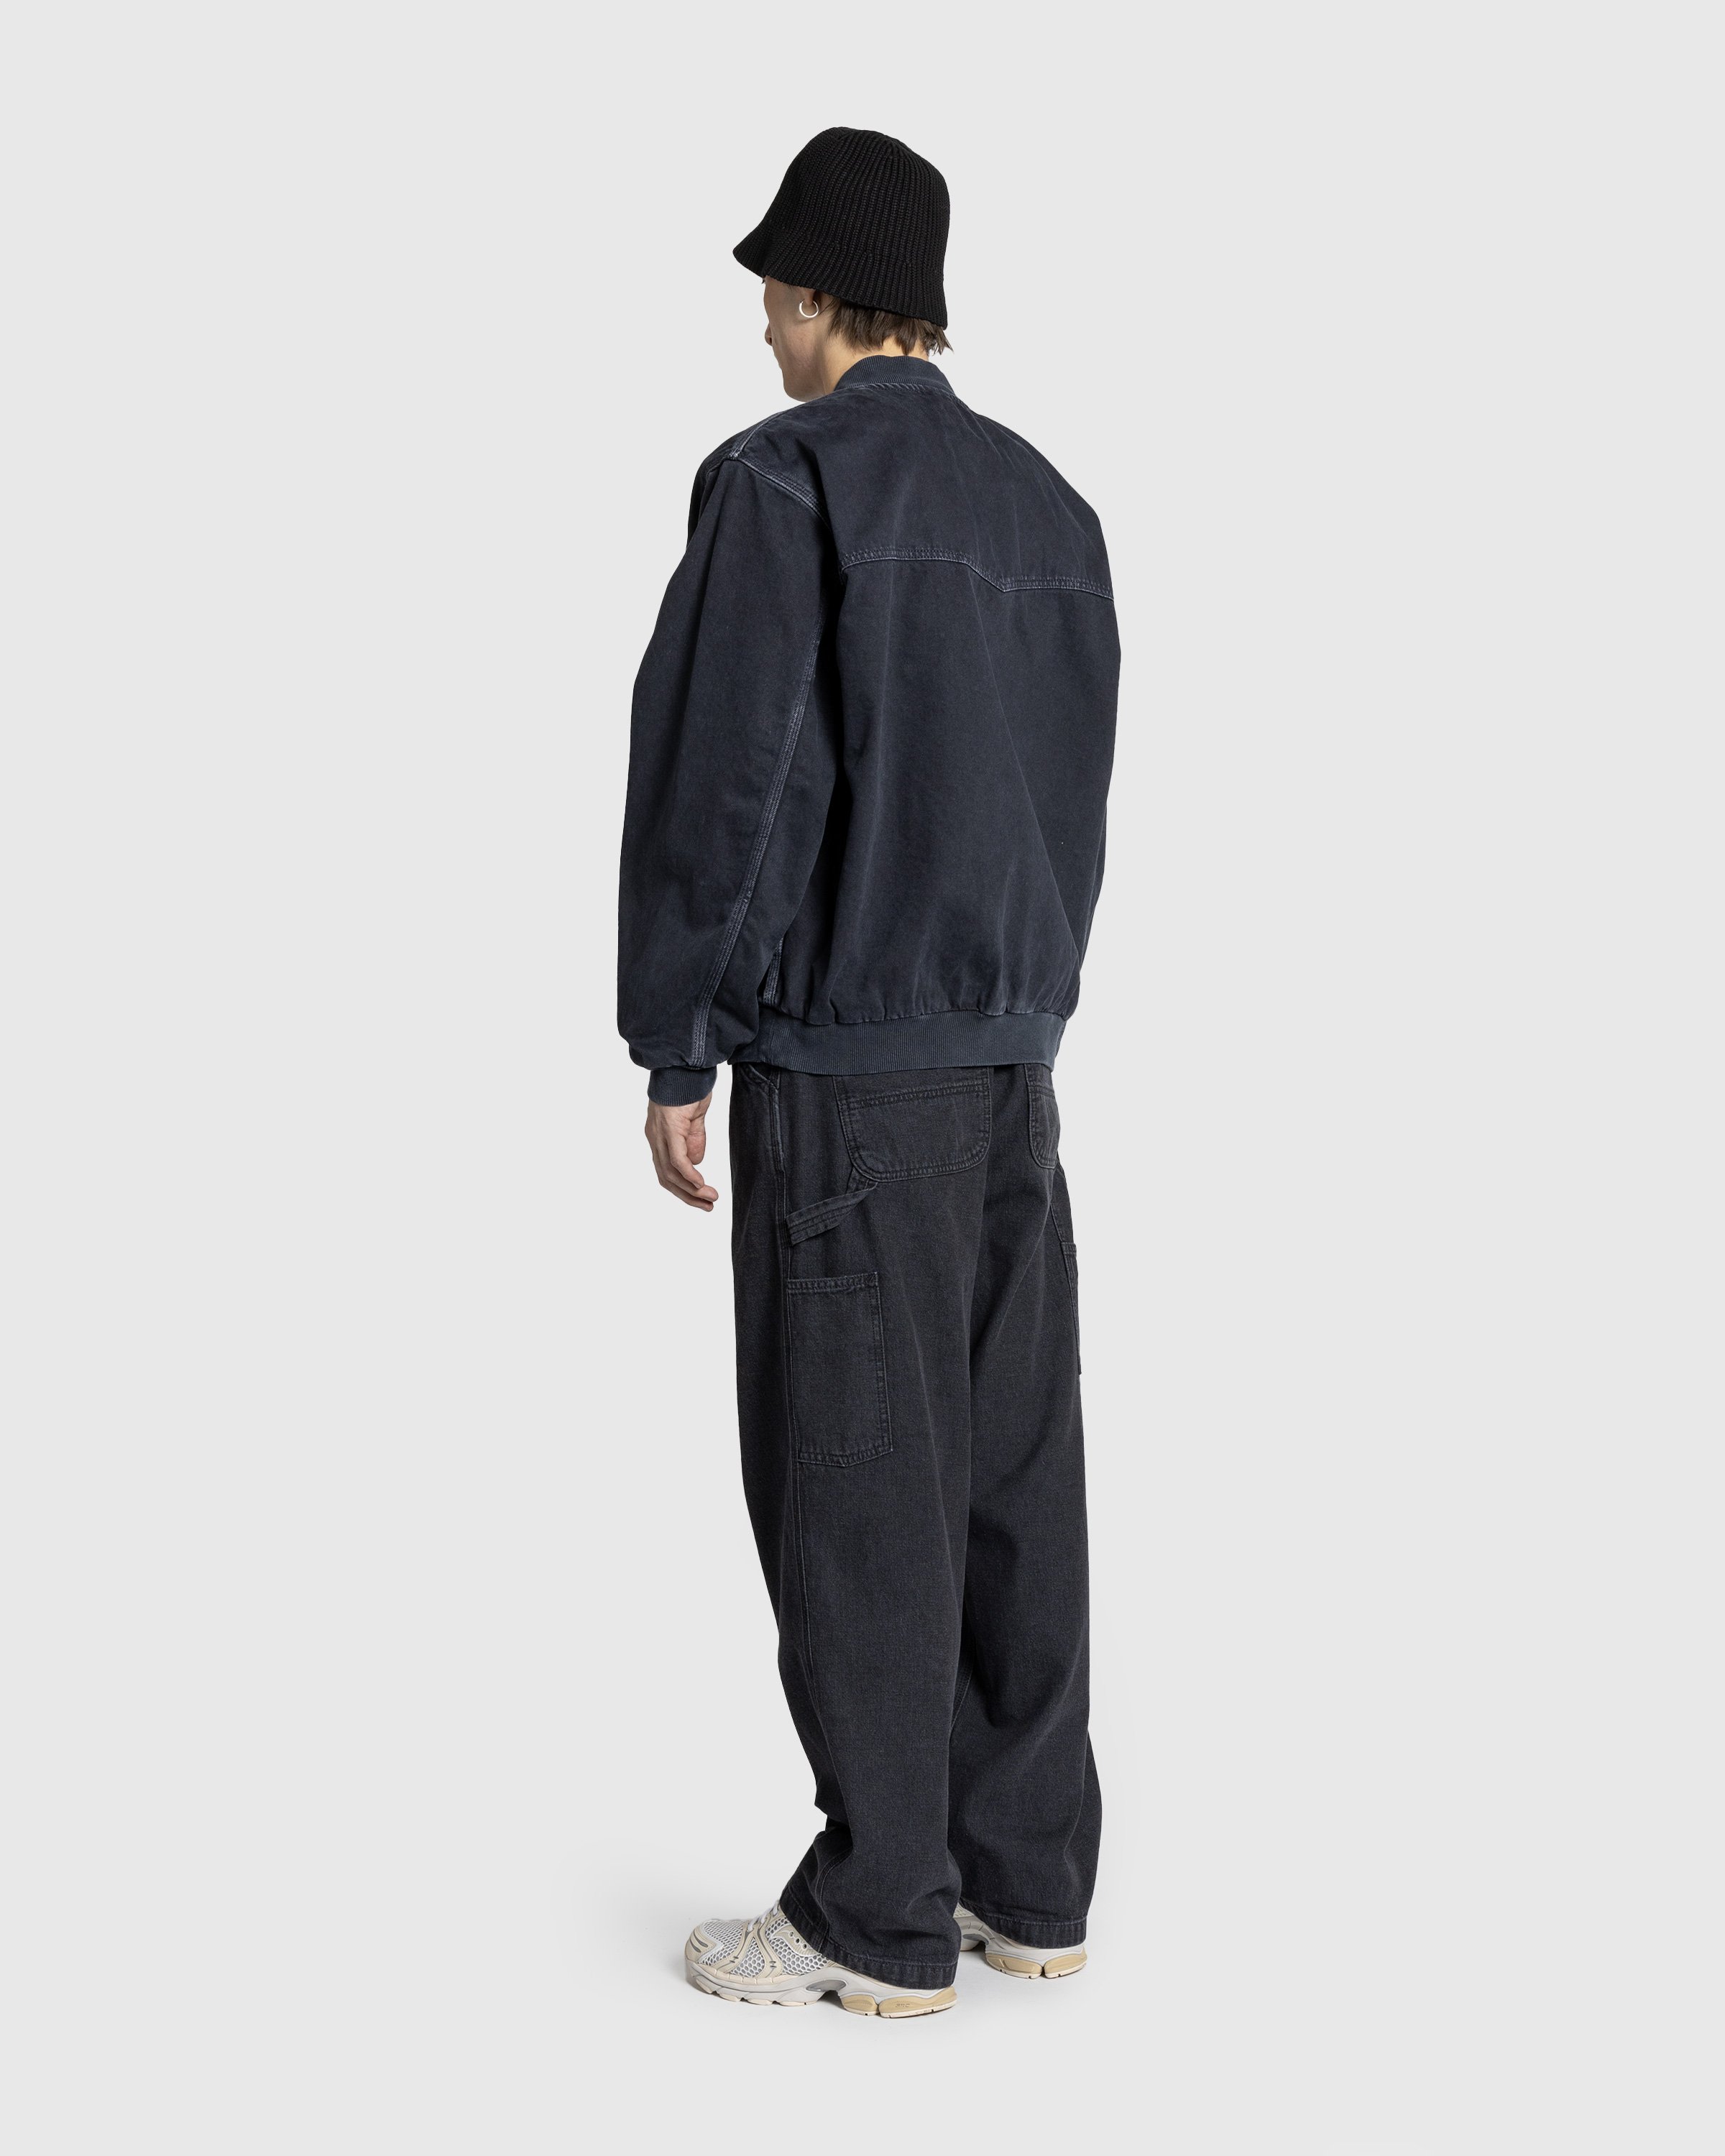 Carhartt WIP - OG Single Knee Pant Black /stone washed - Clothing - Black - Image 4